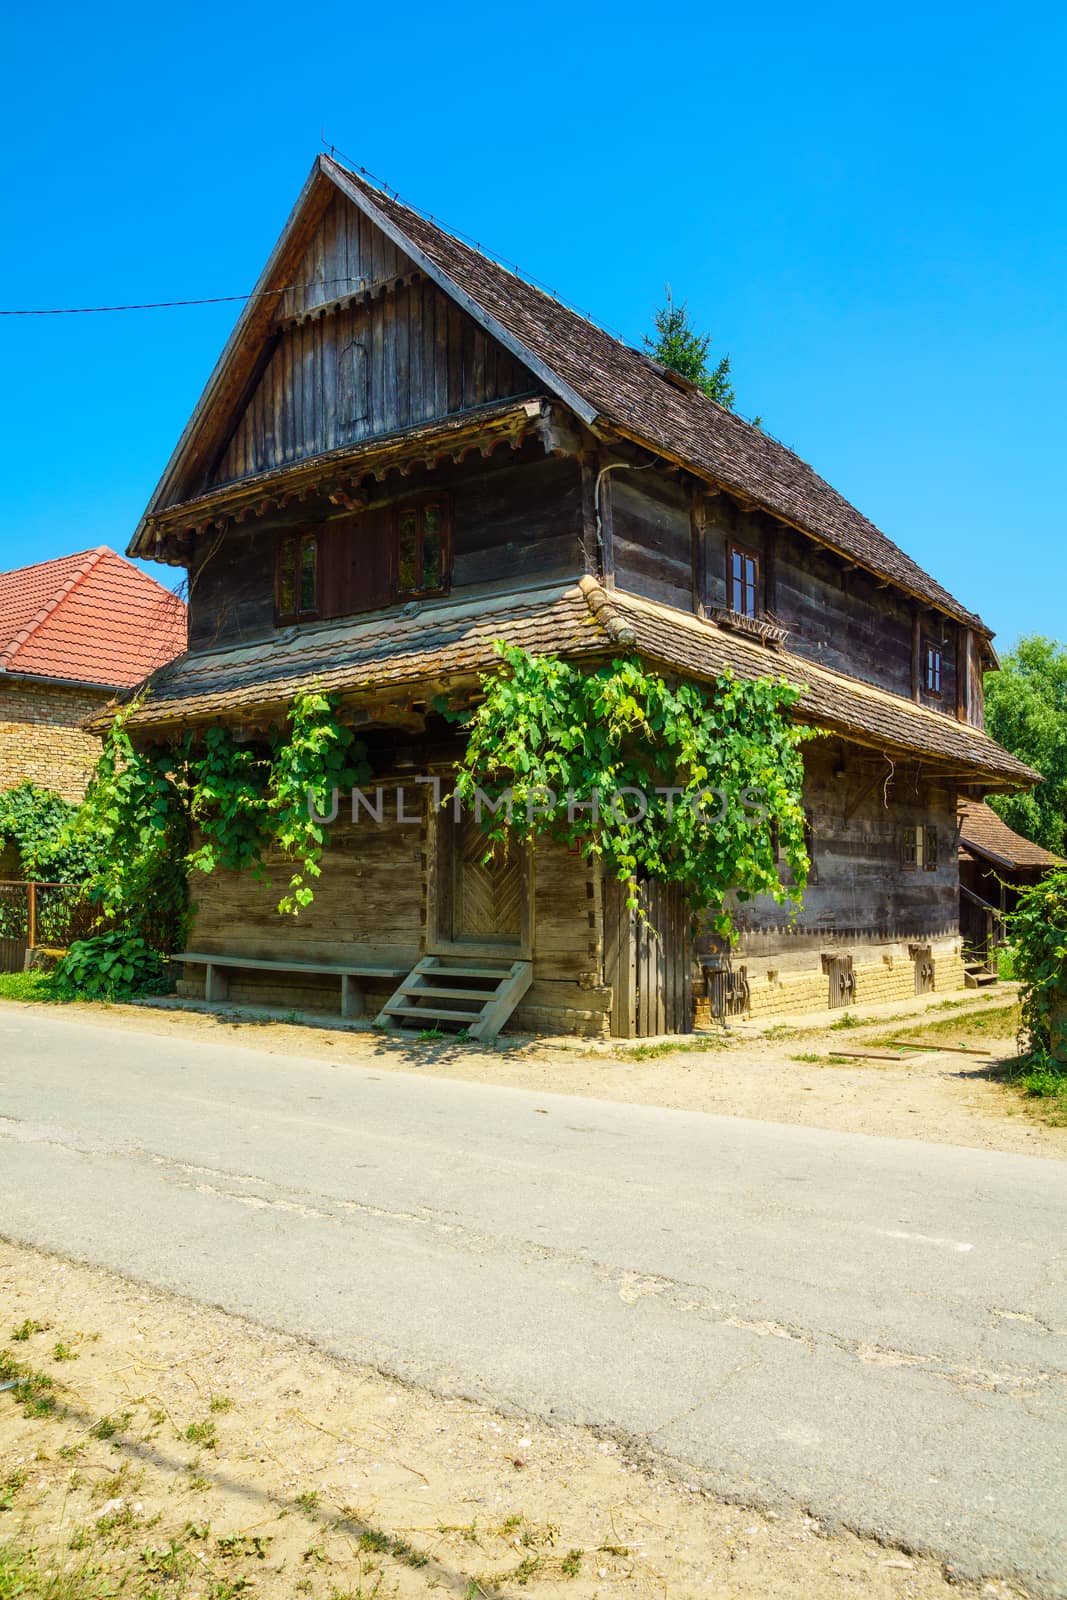 Typical wooden house in the village Krapje, Lonjsko Polje area, Croatia